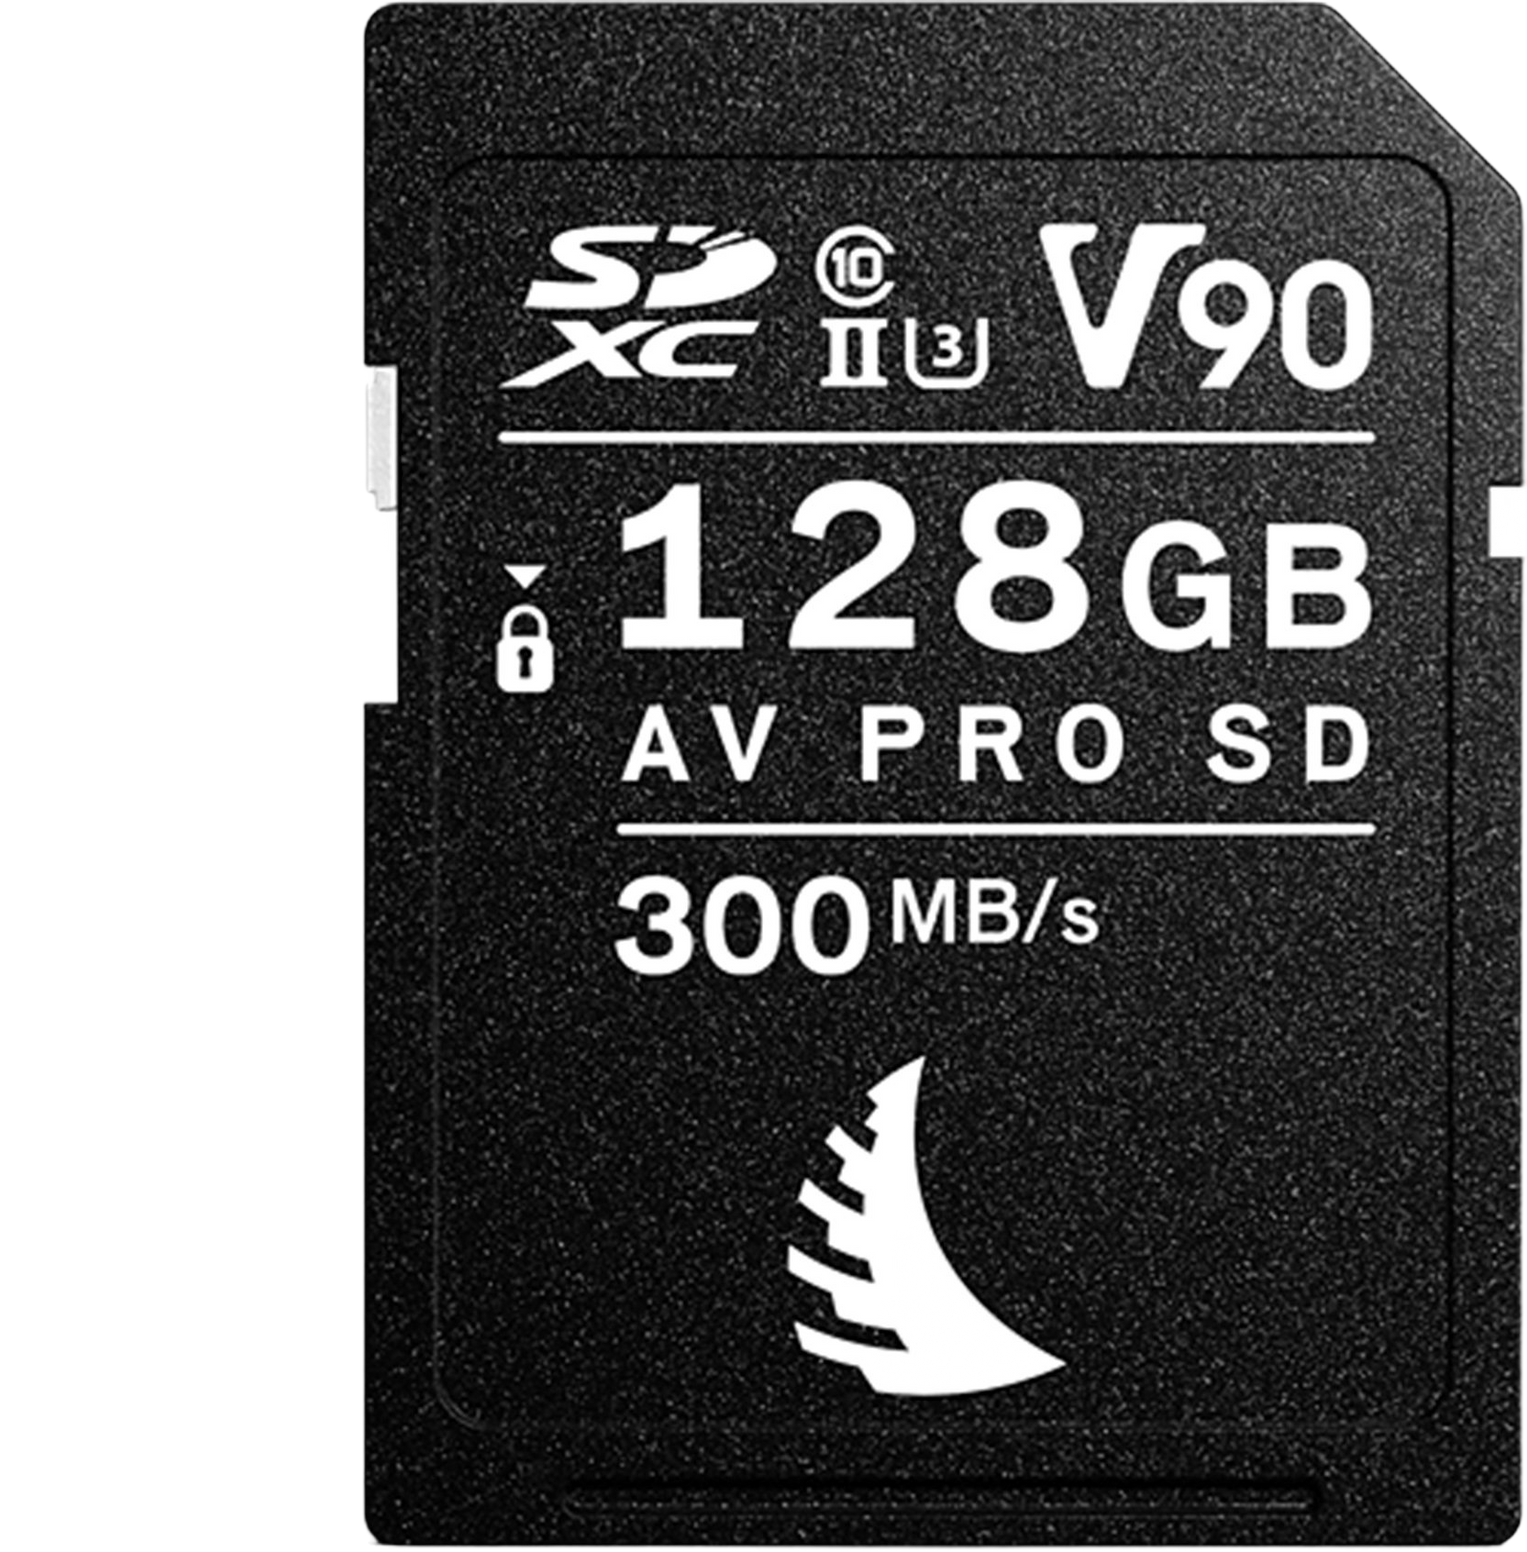 Angelbird 128GB AV PRO MK2 V90 SD Memory Card